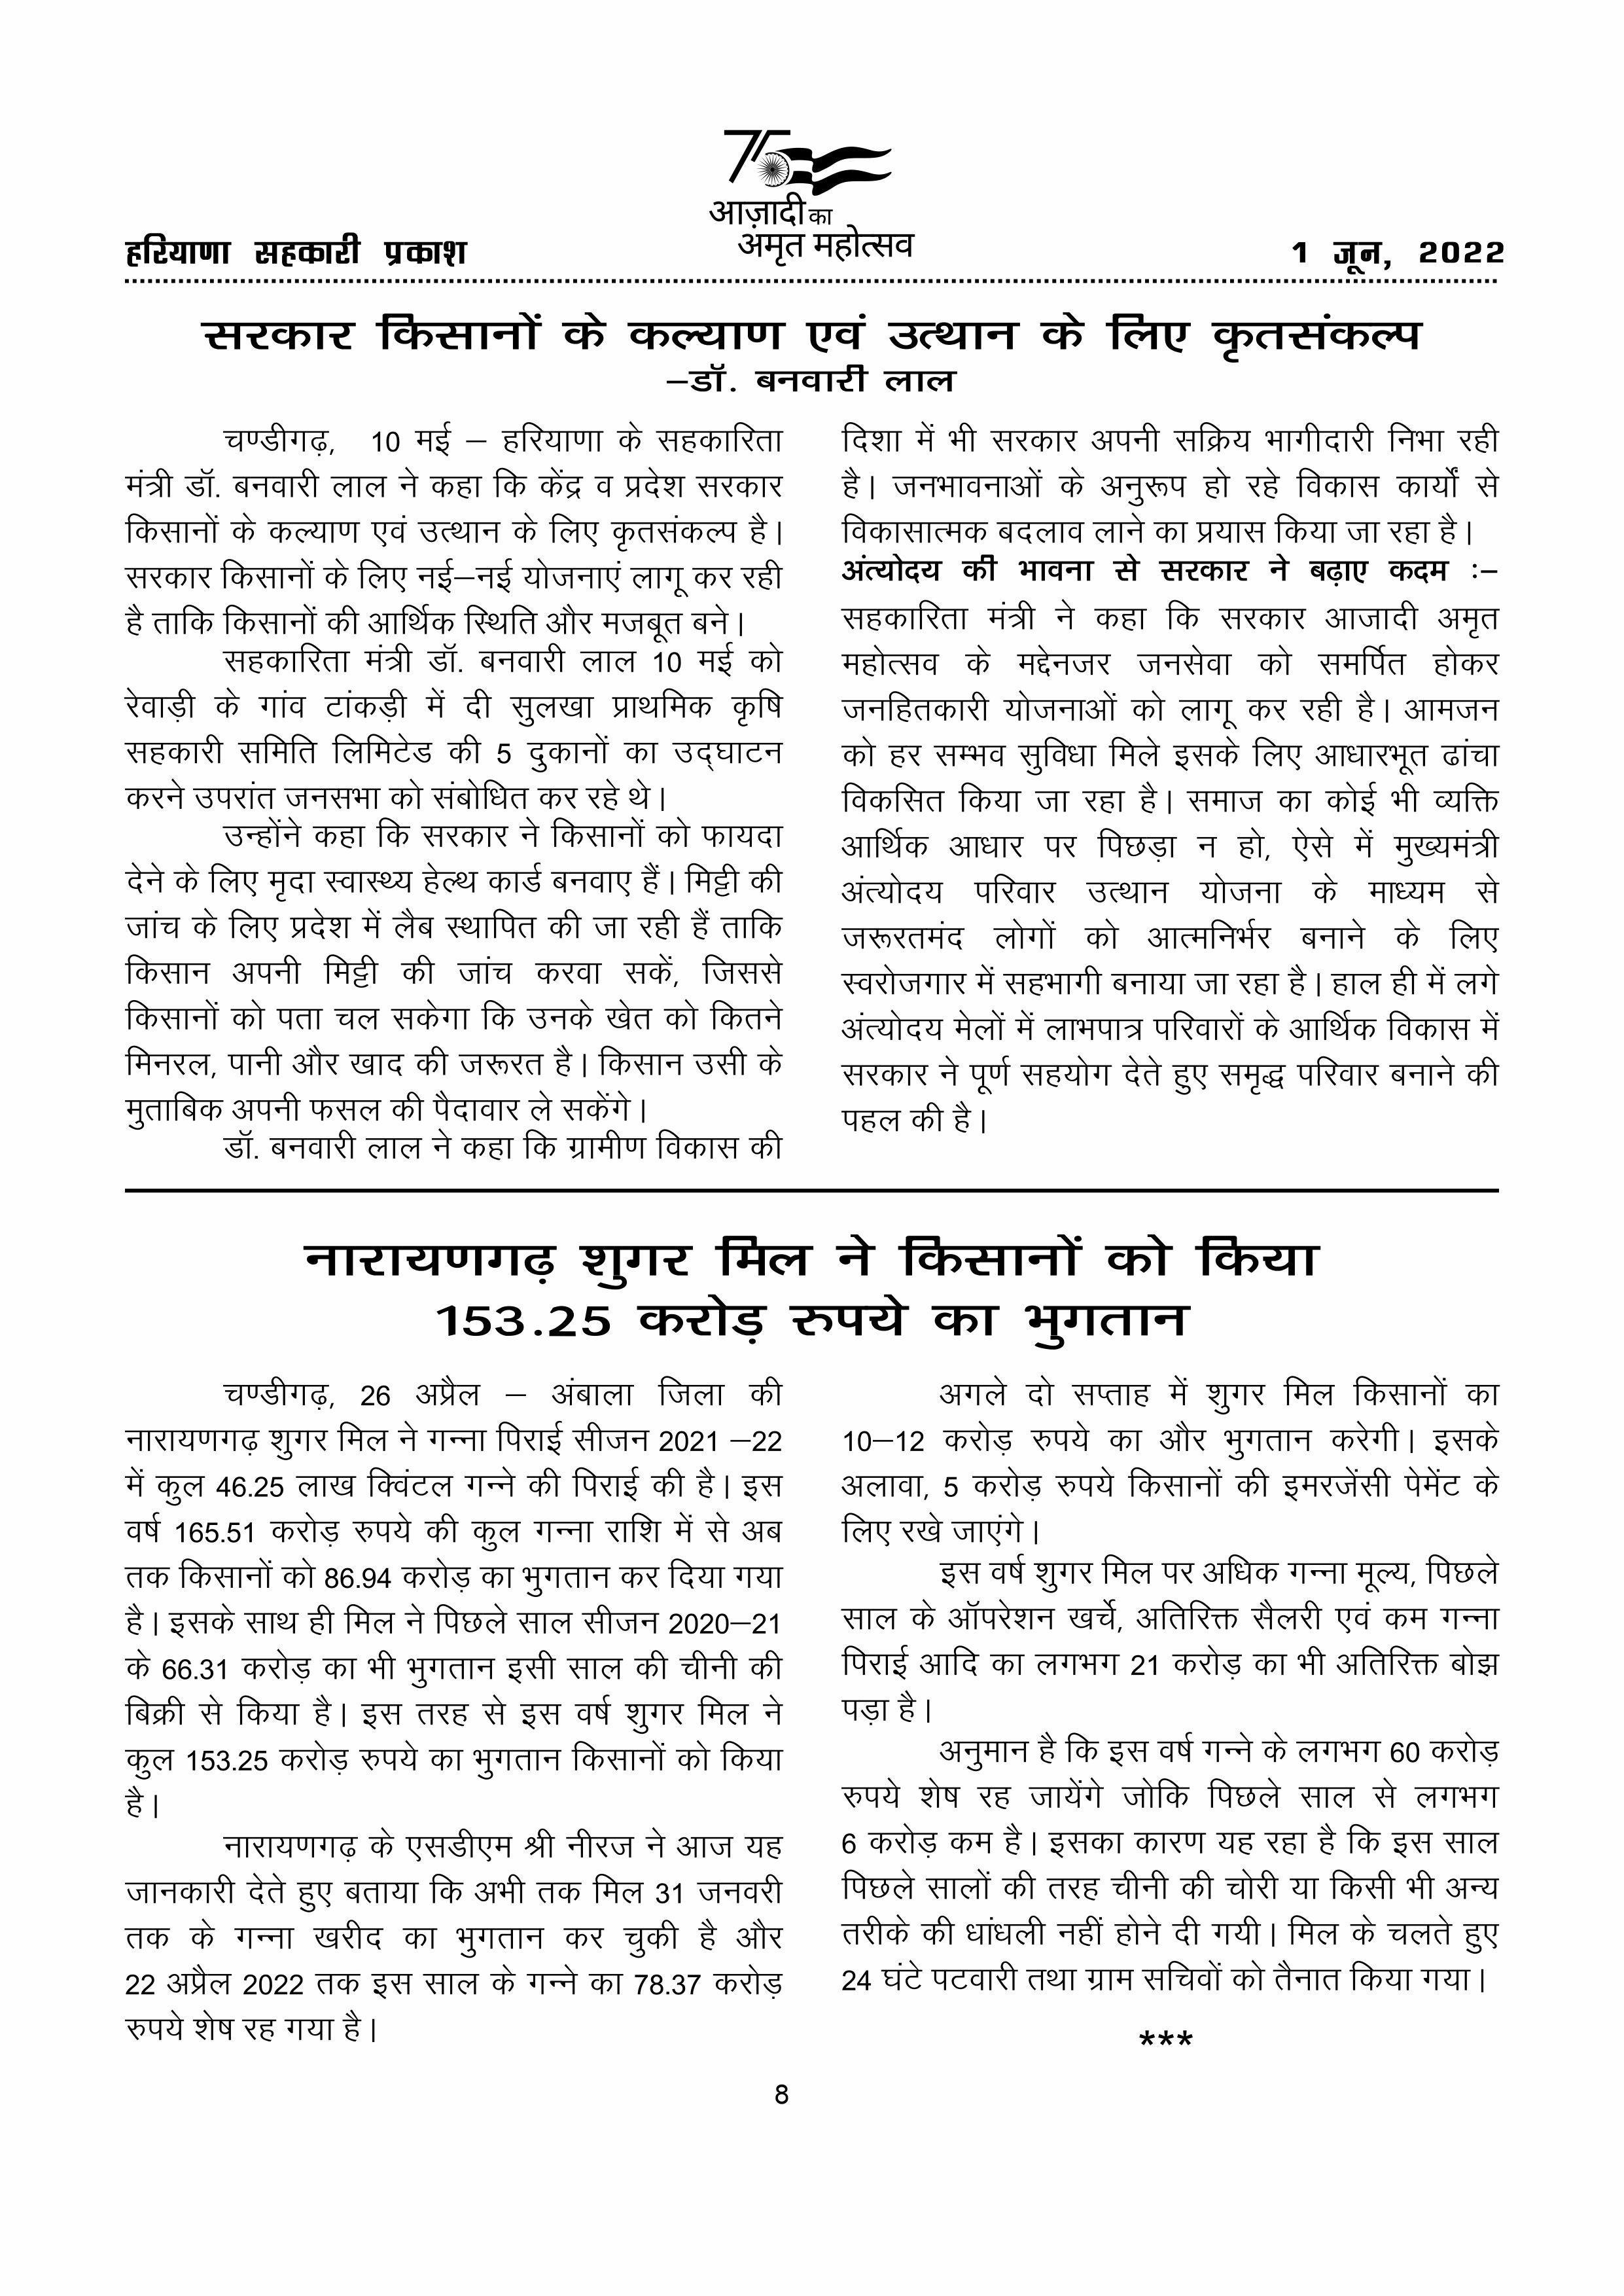 Haryana Sahkari Parkash, June 2022